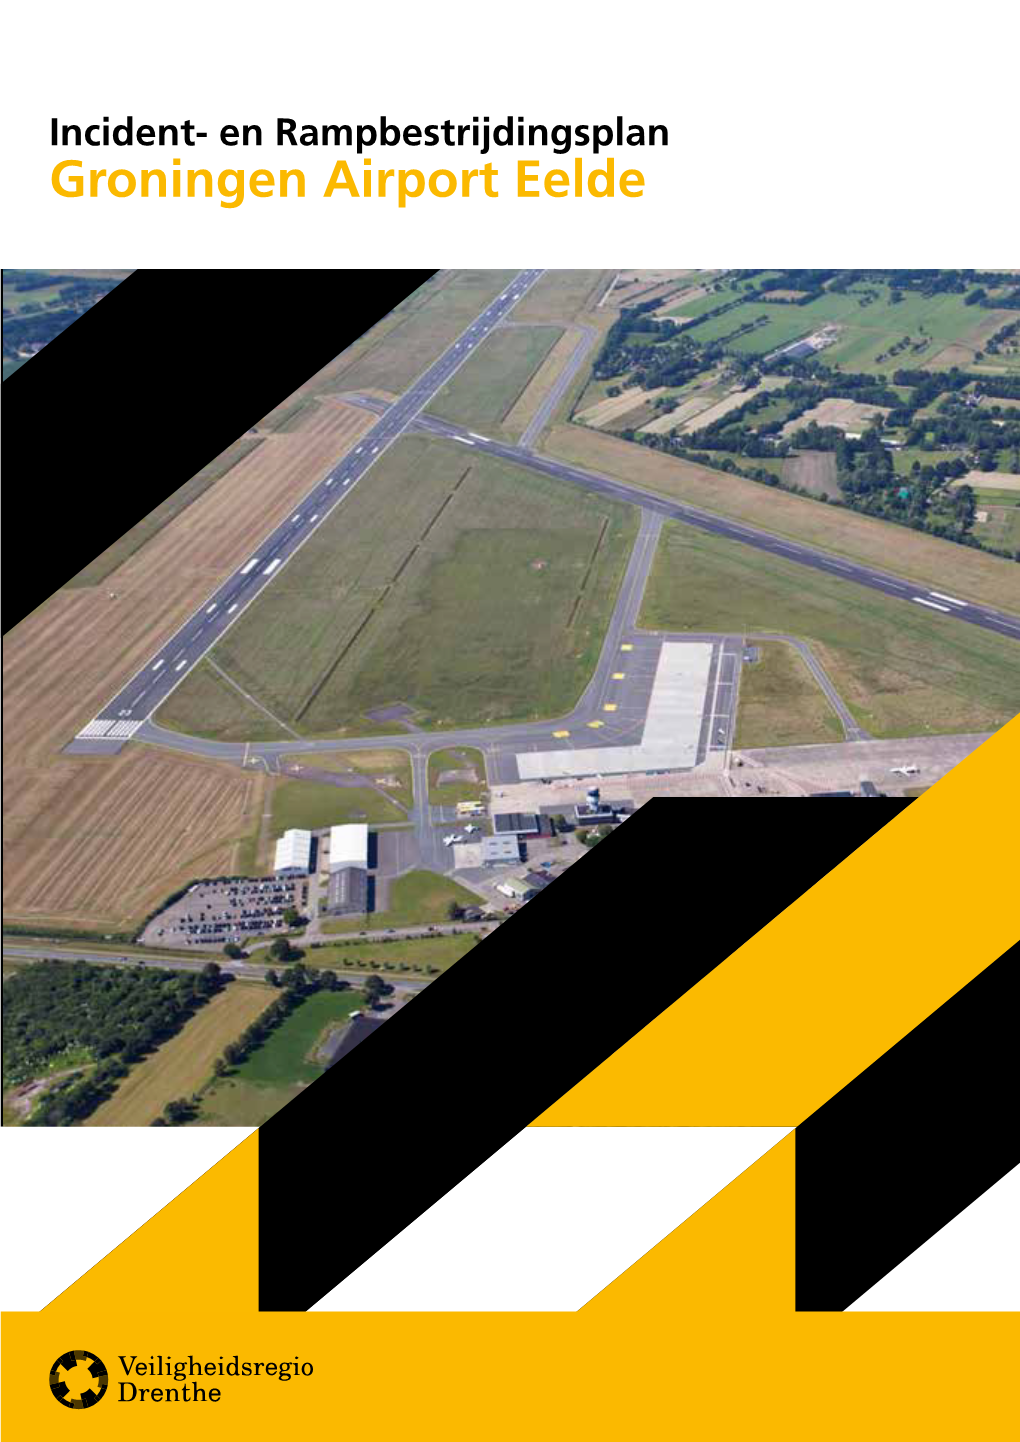 Groningen Airport Eelde 2 Incident- En Rampbestrijdingsplan Groningen Airport Eelde